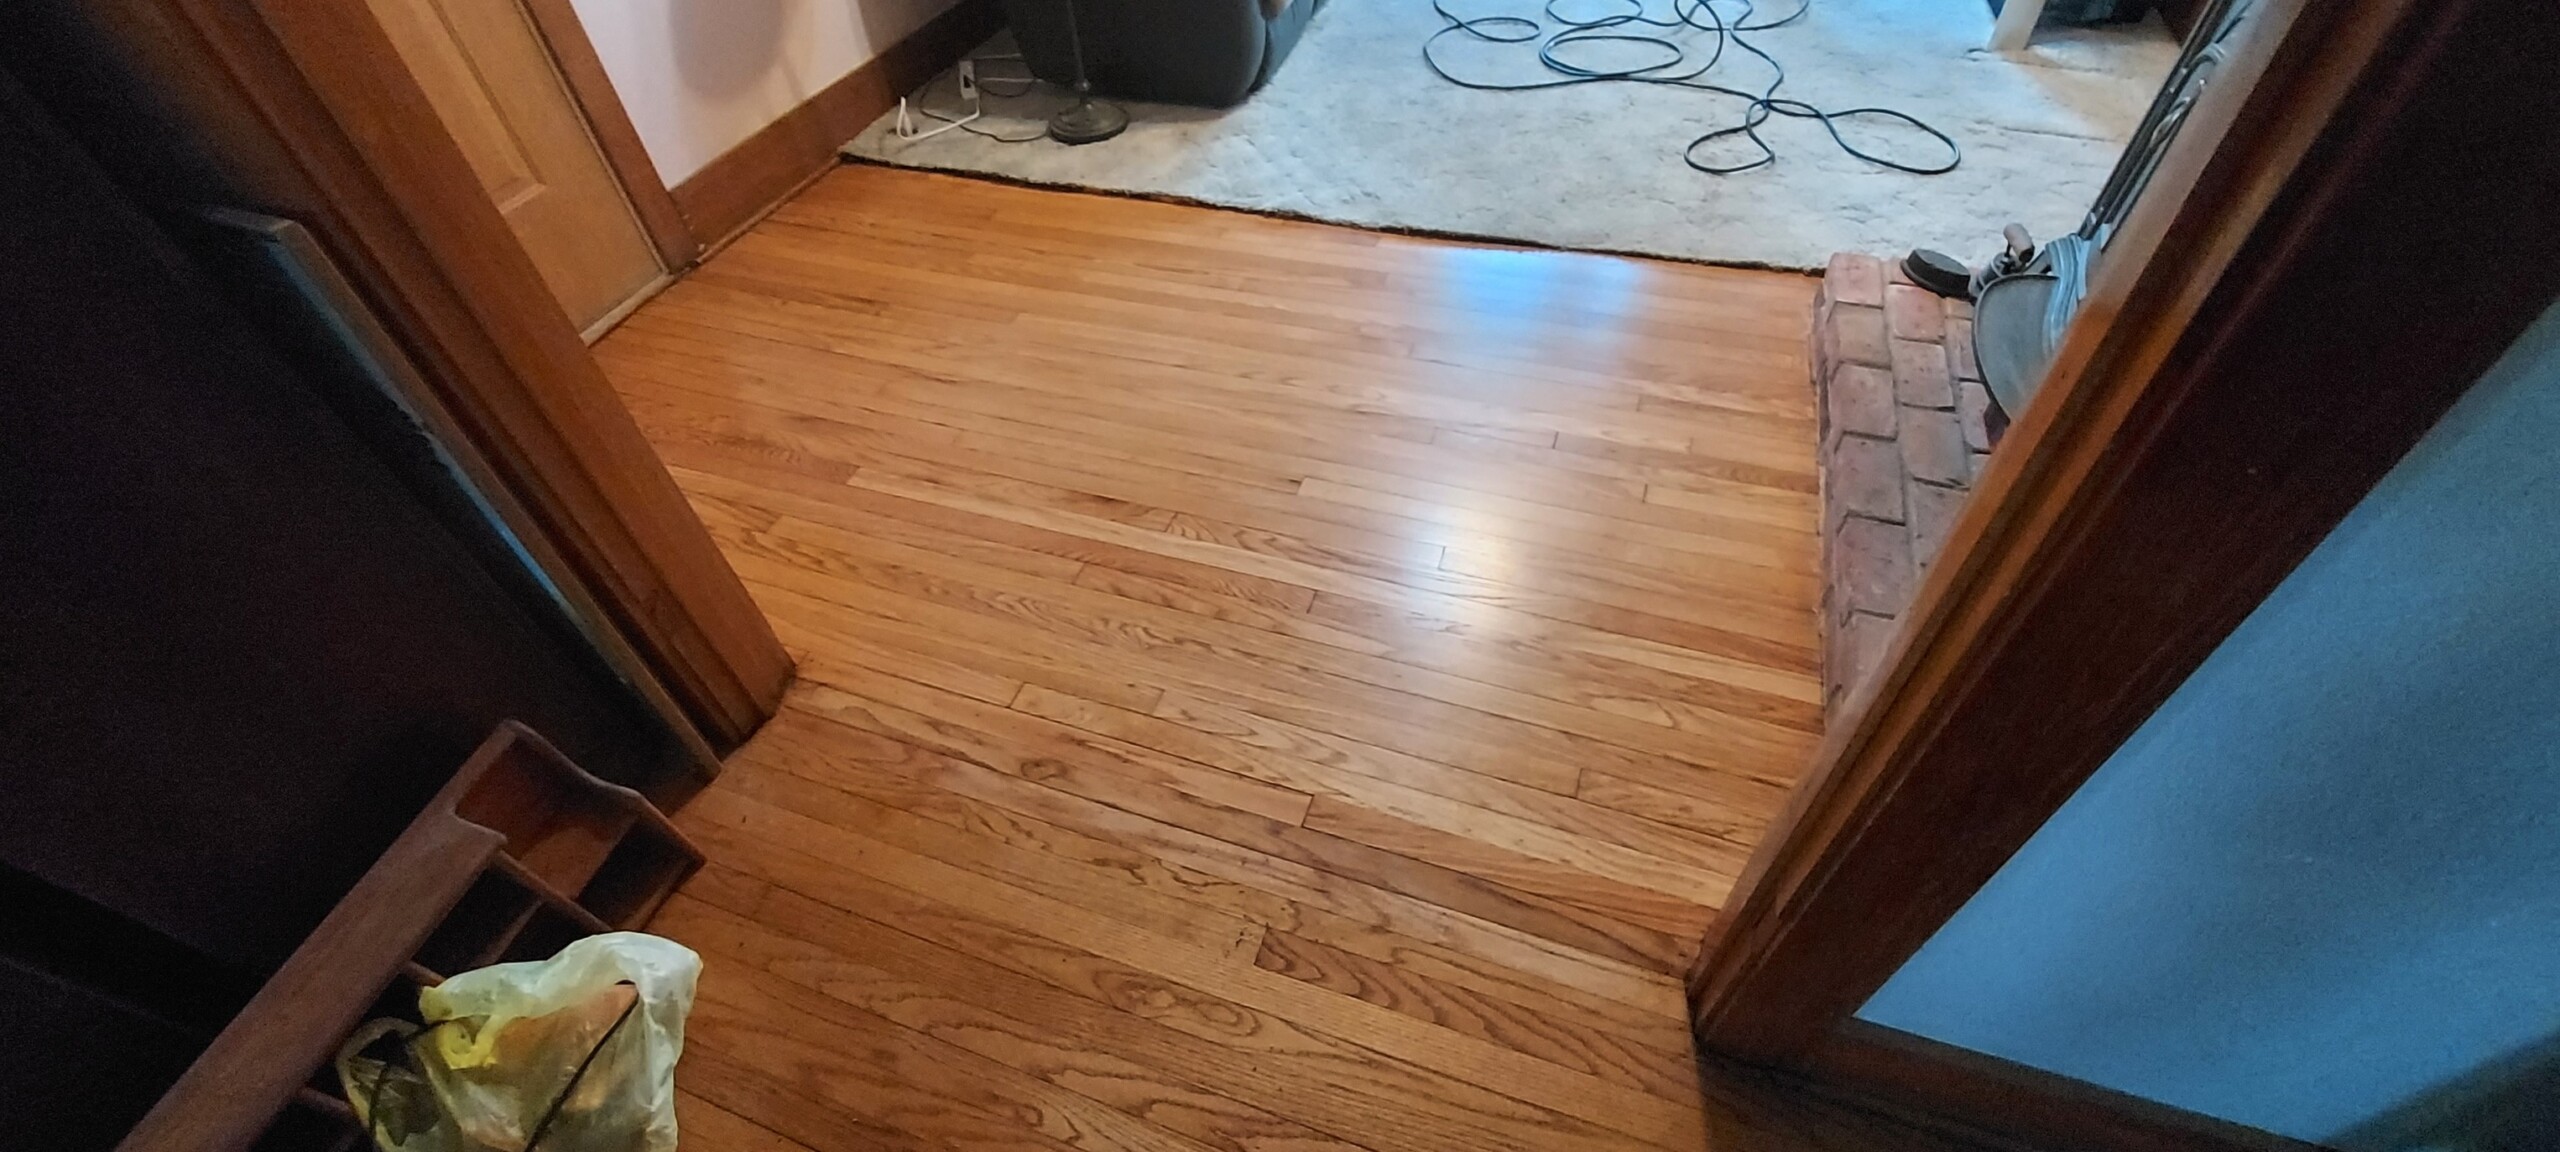 After-Hammered Floor Renewal